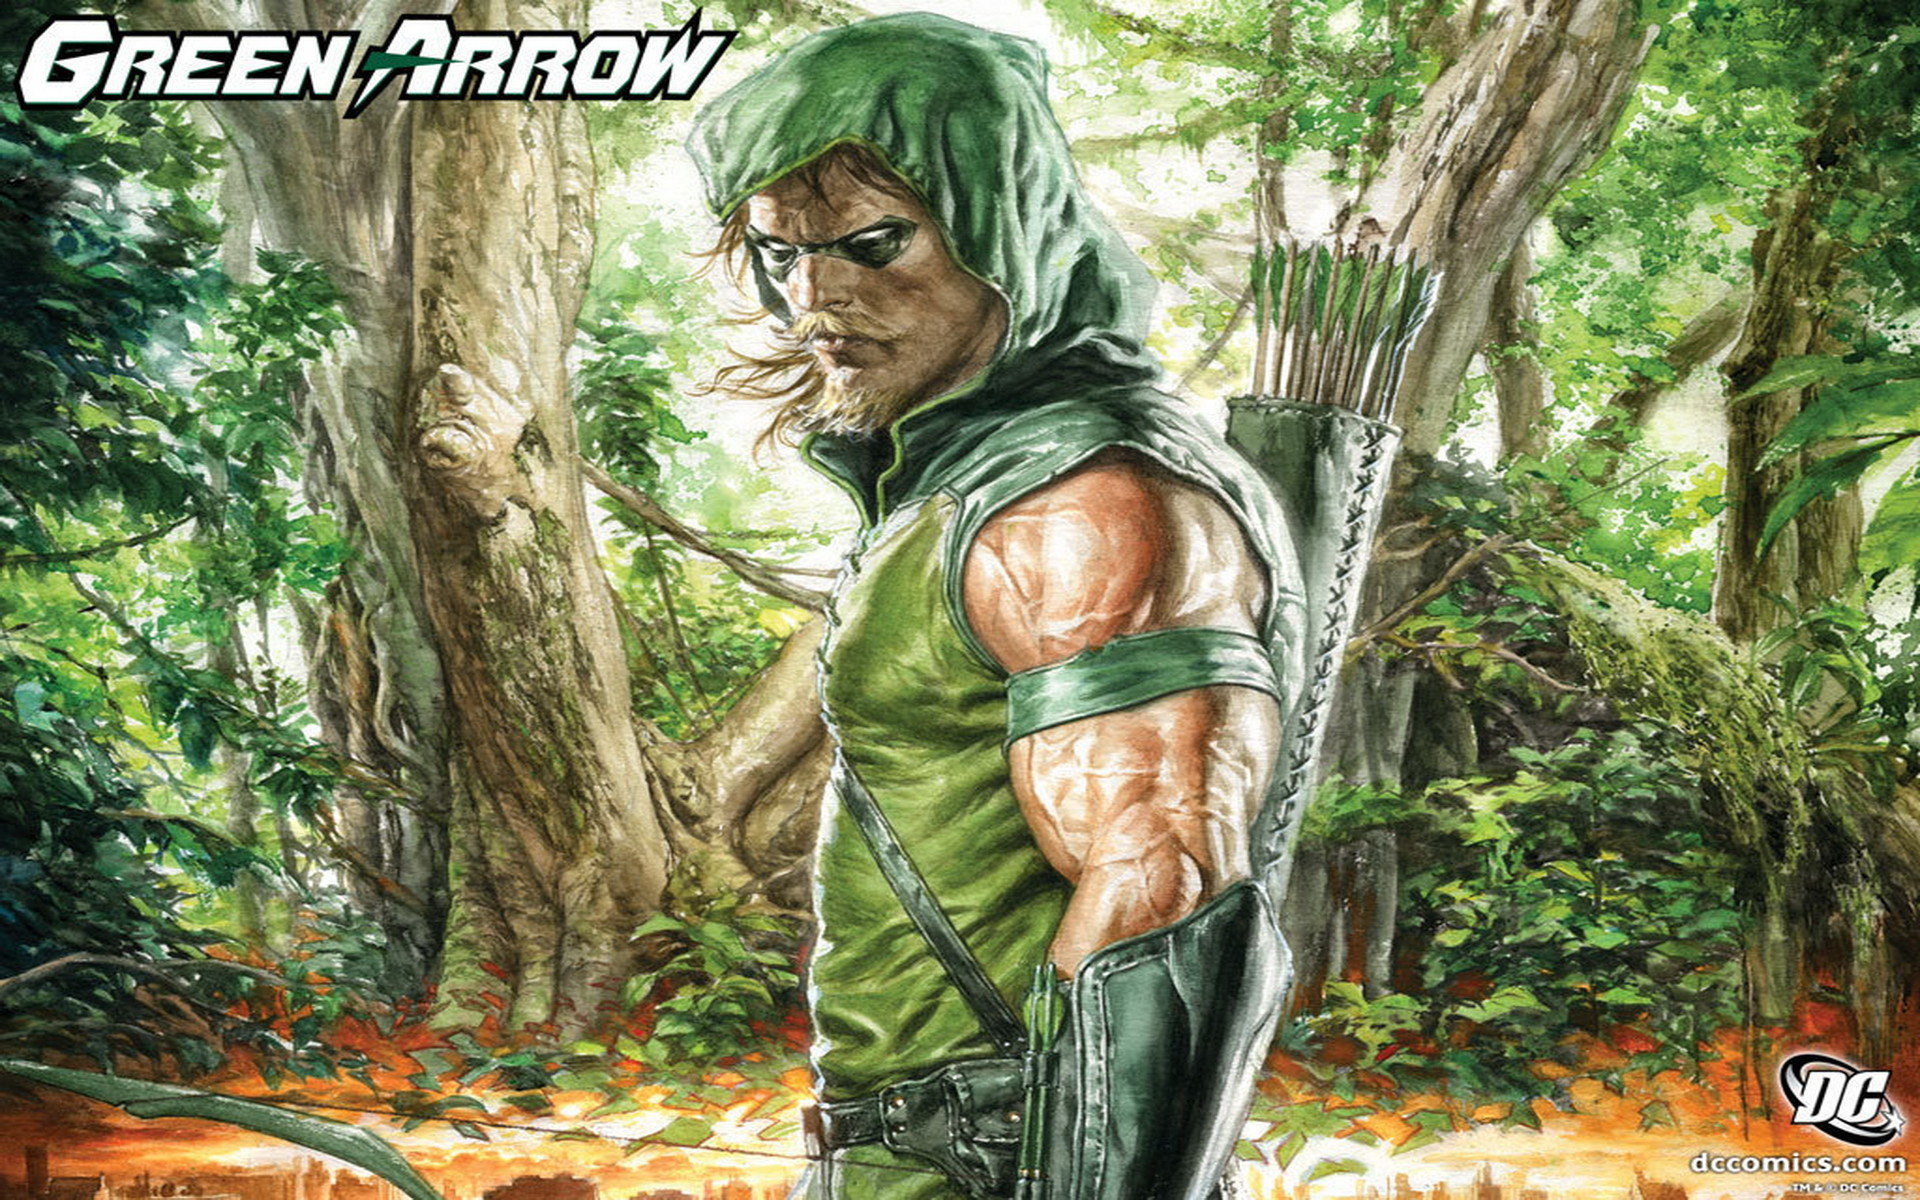 Green Arrow hd wallpapers